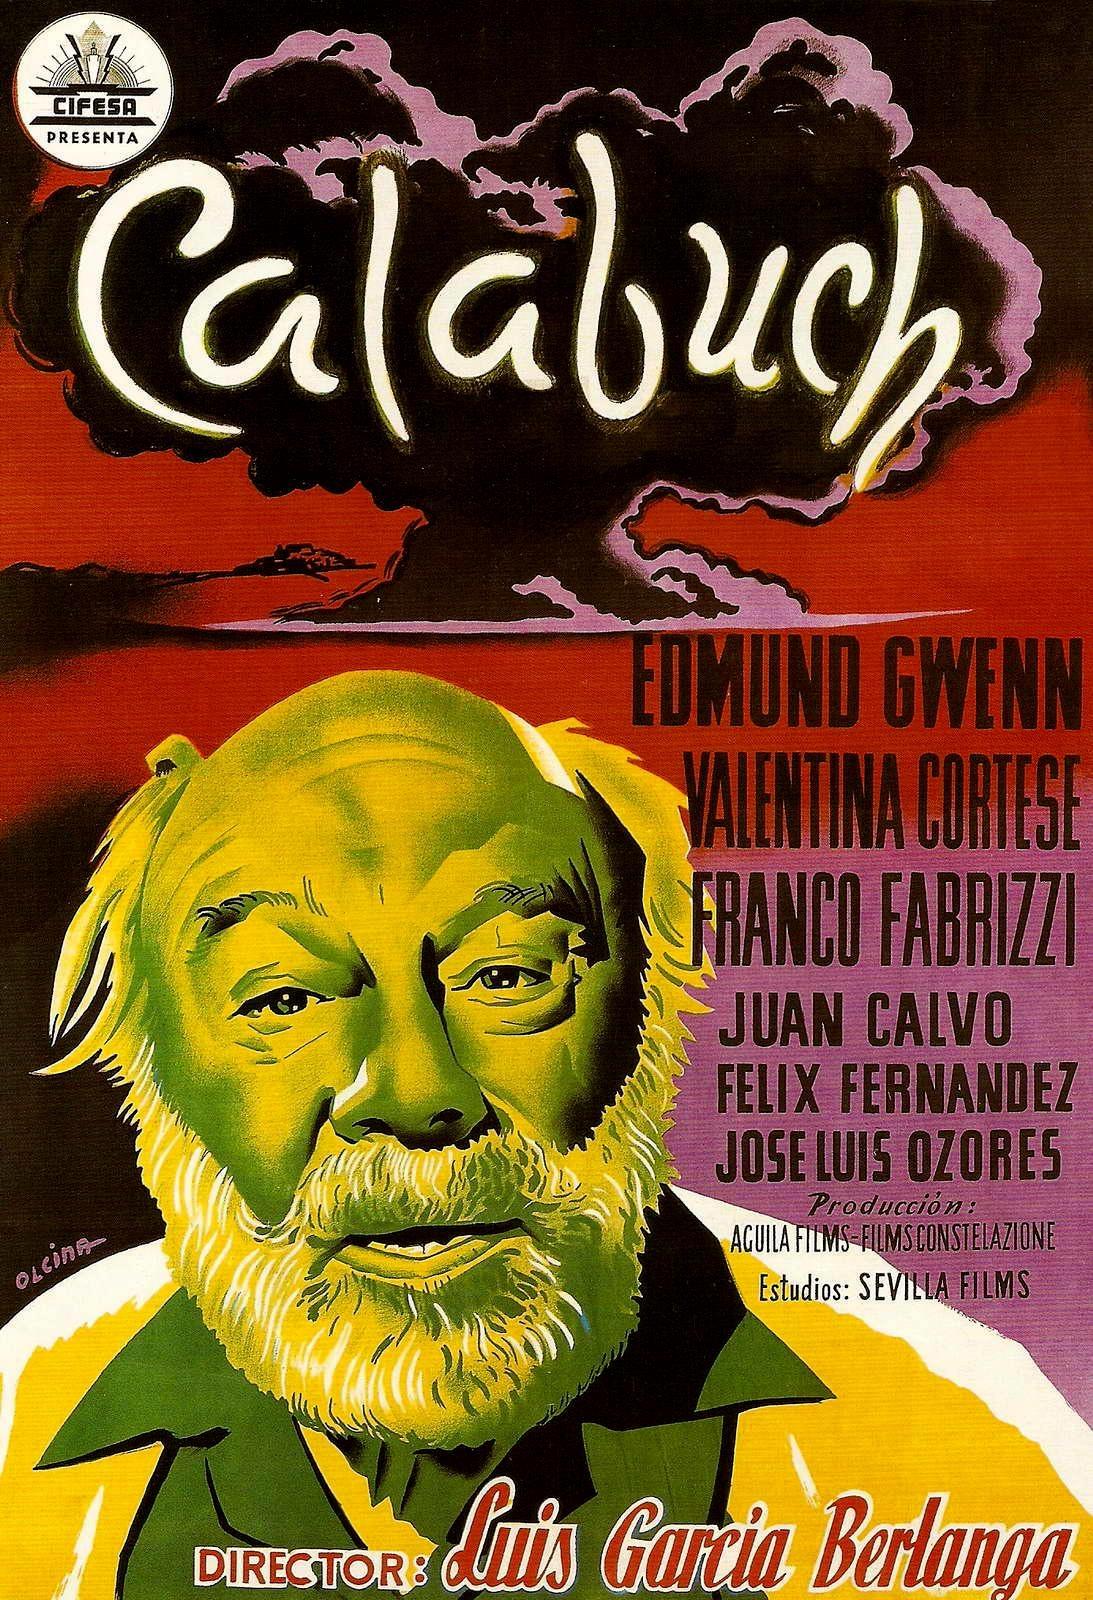 Постер фильма Калабуч | Calabuch